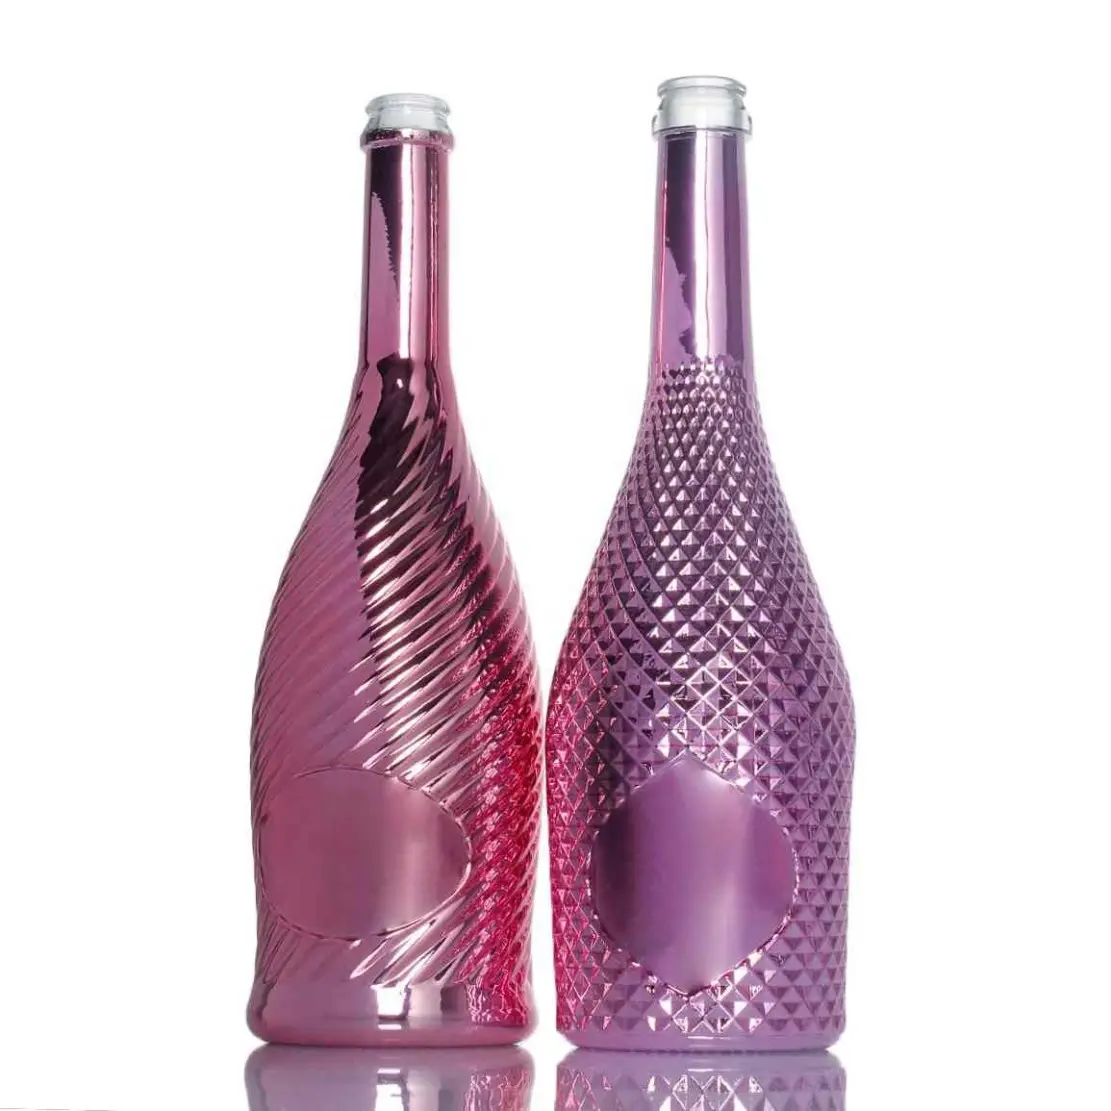 Fantezi 750ml krom cilalı ipek baskı köpüklü şarap metal etiketleri ile şampanya kadehi şişe